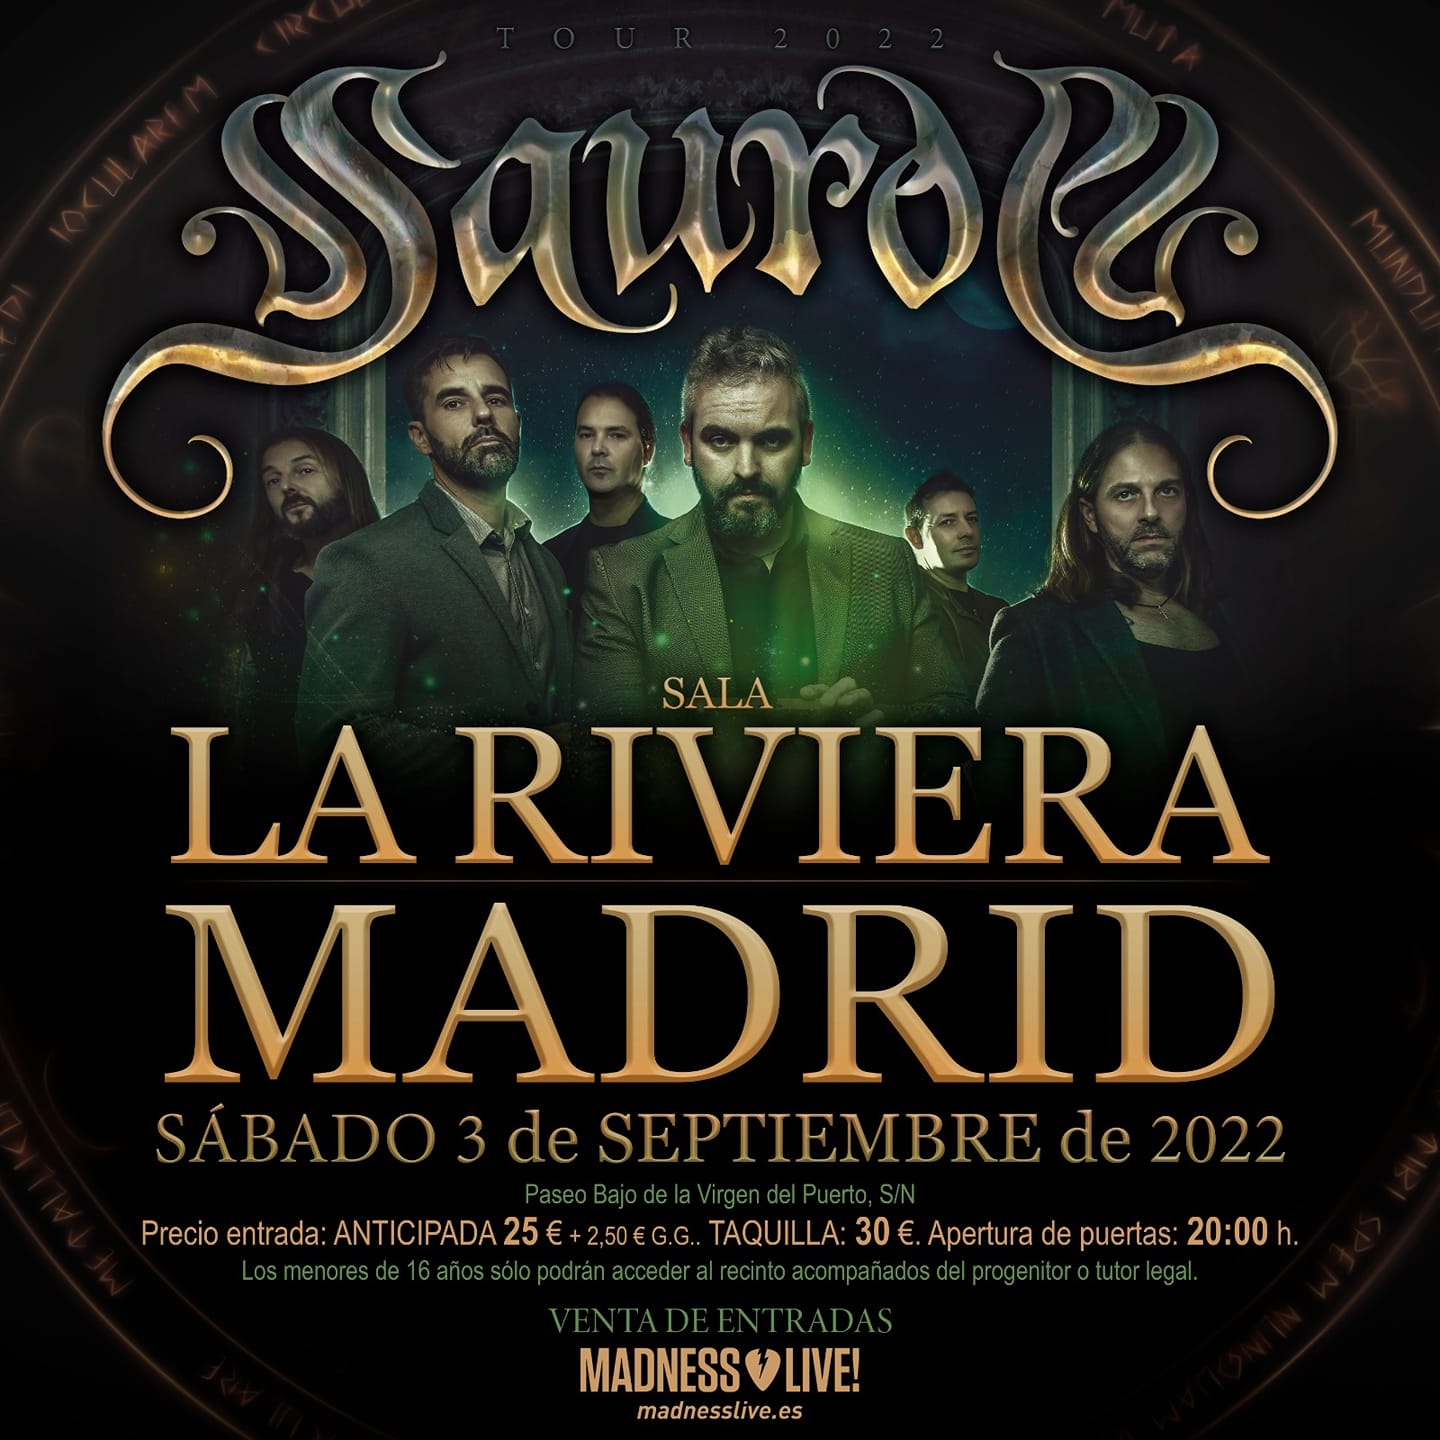 Concierto de Saurom en Madrid en la Sala La Riviera en septiembre